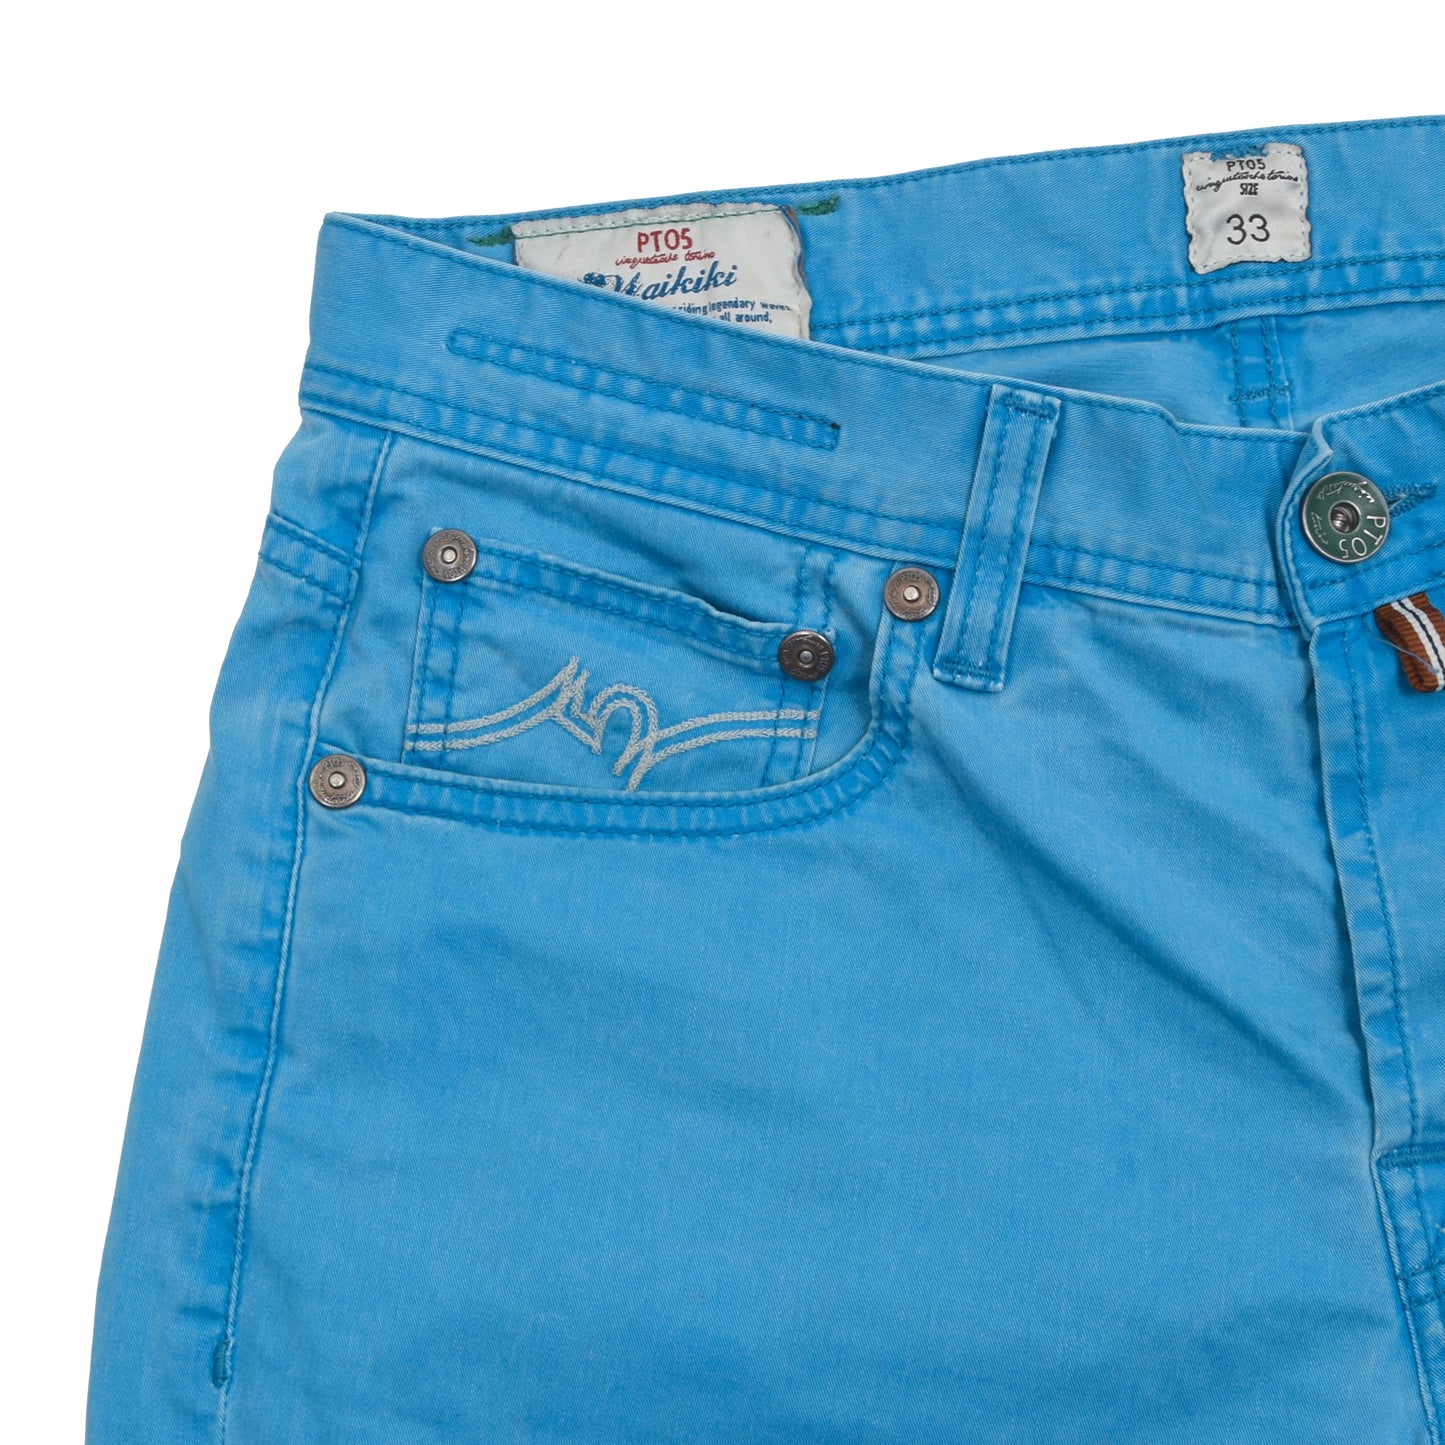 PT05 Waikiki Shorts Size 33 - Blue/Teal